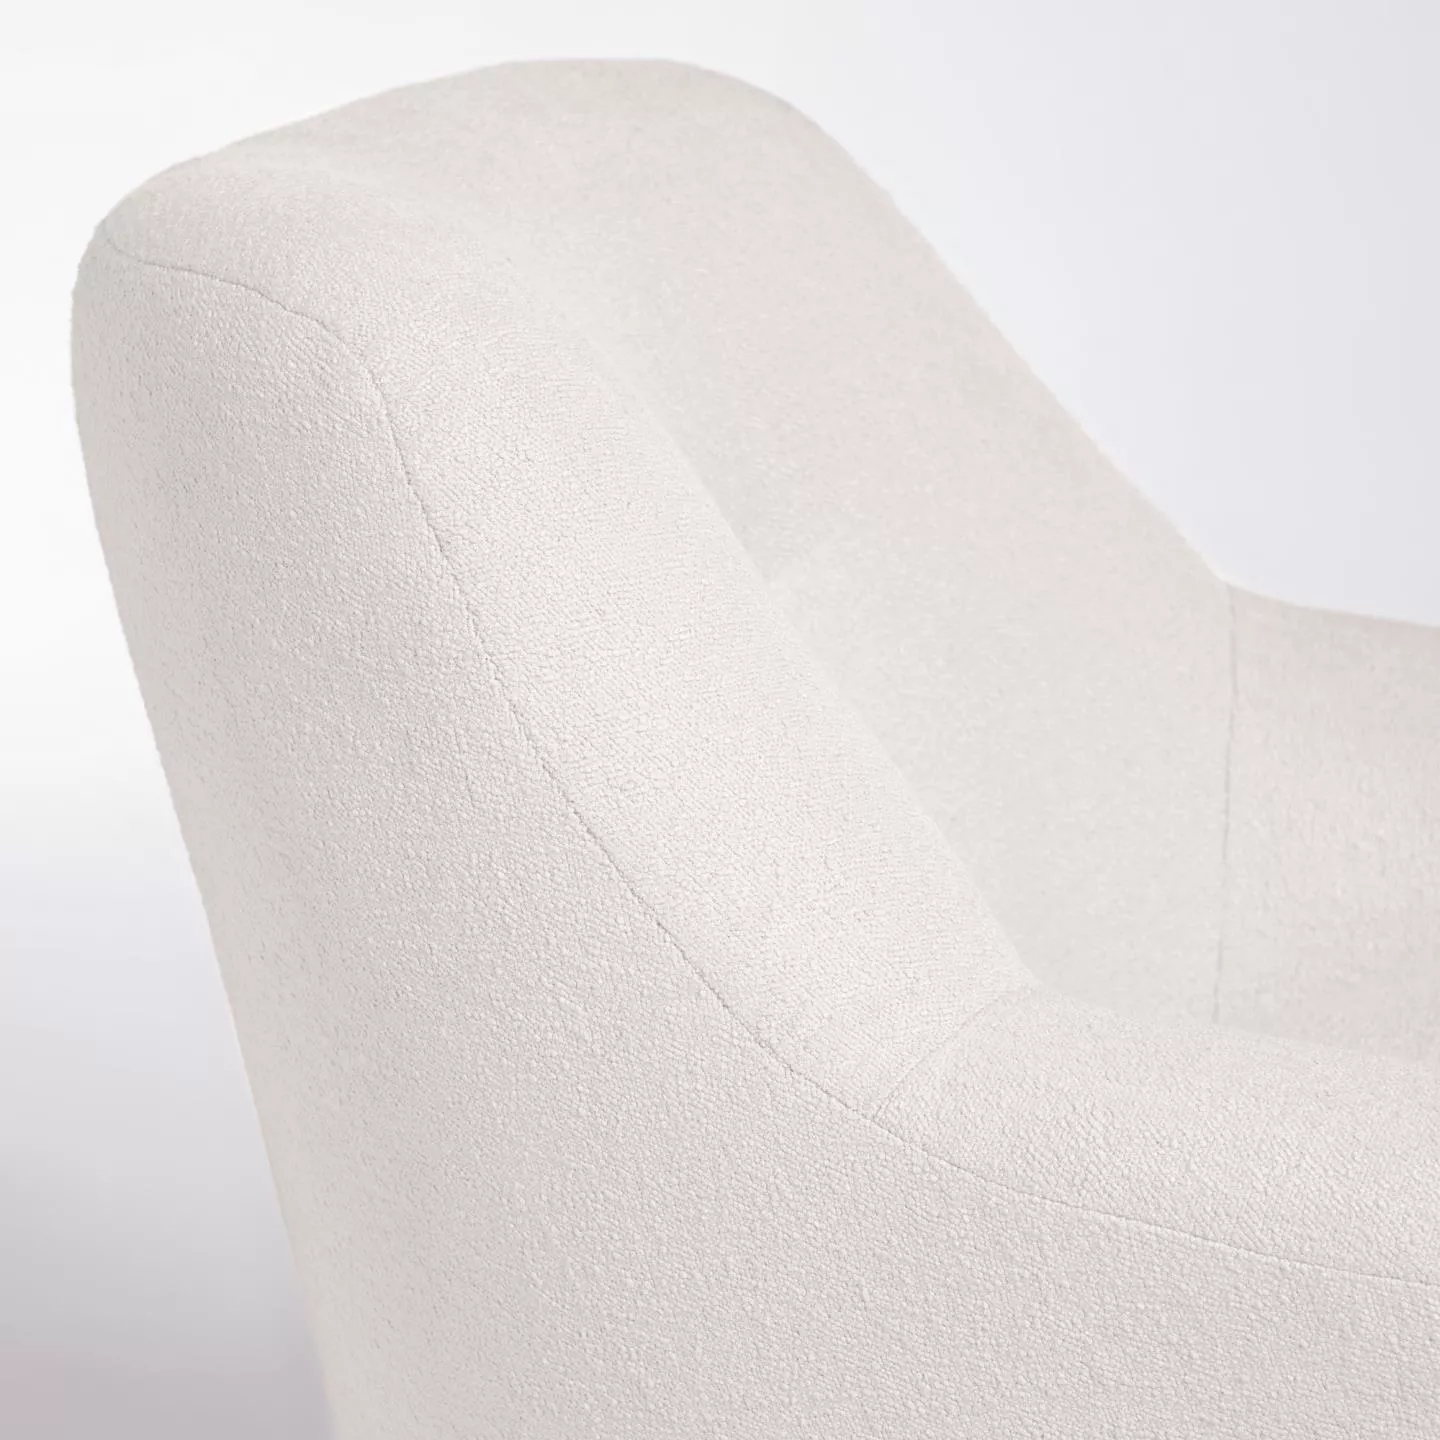 Кресло La Forma Candela из белой ткани букле